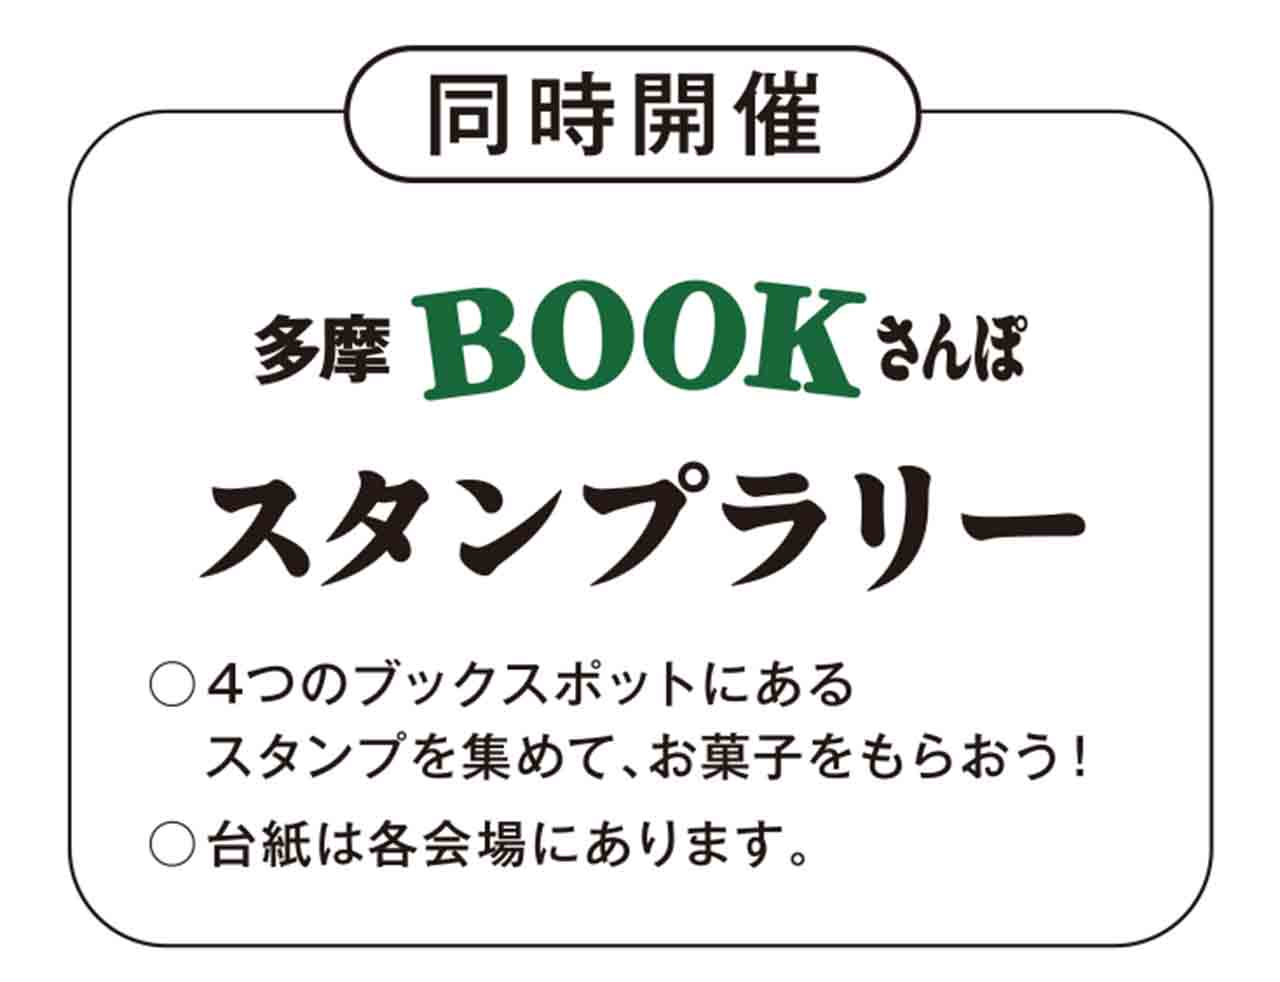 オススメの本を交換してつながろう♪『第３回多摩BOOKさんぽ』が貝取・豊ヶ丘エリアで3/26開催